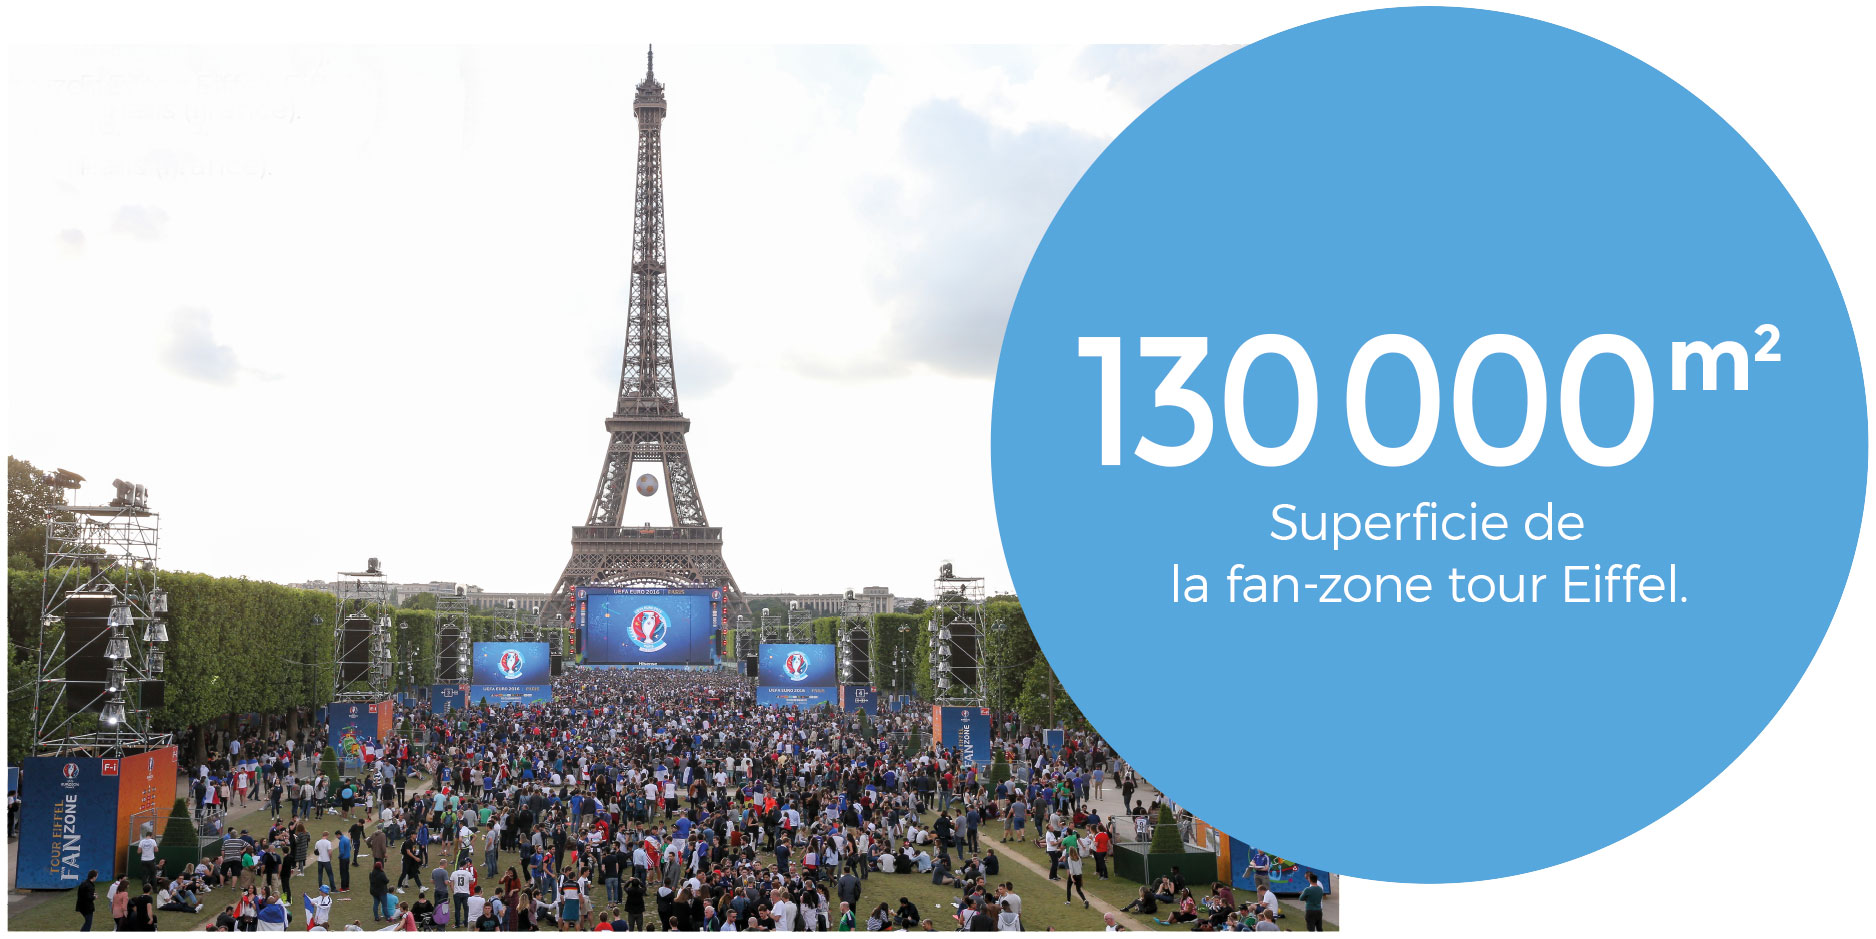 Fan-zone tour Eiffel, juin-juillet 2016, Paris (France)